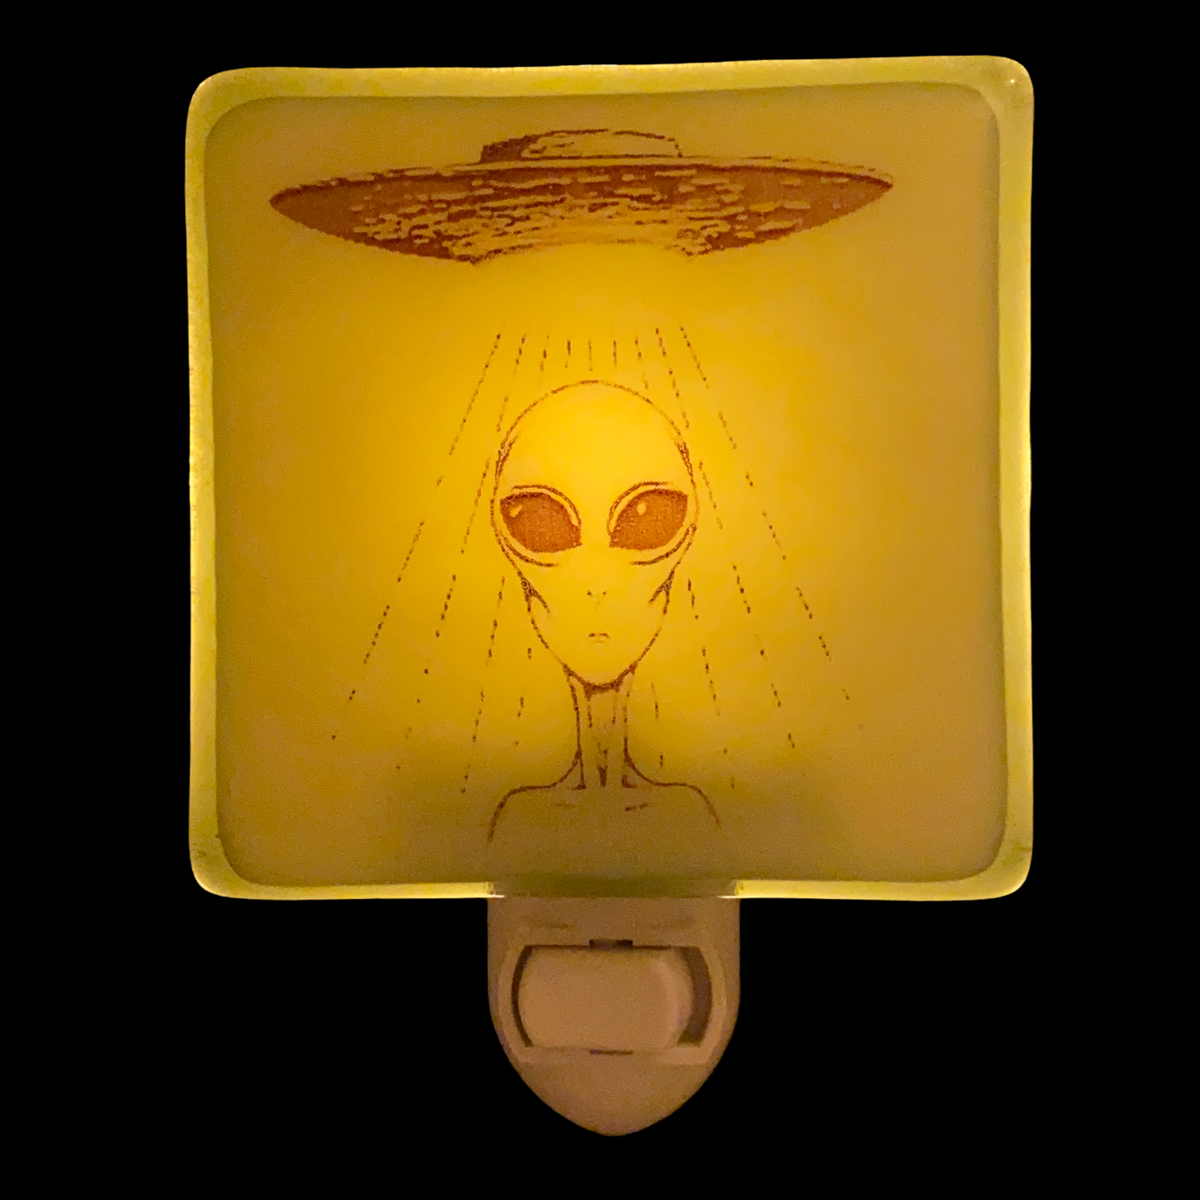 Alien UFO Science Fiction Night Light